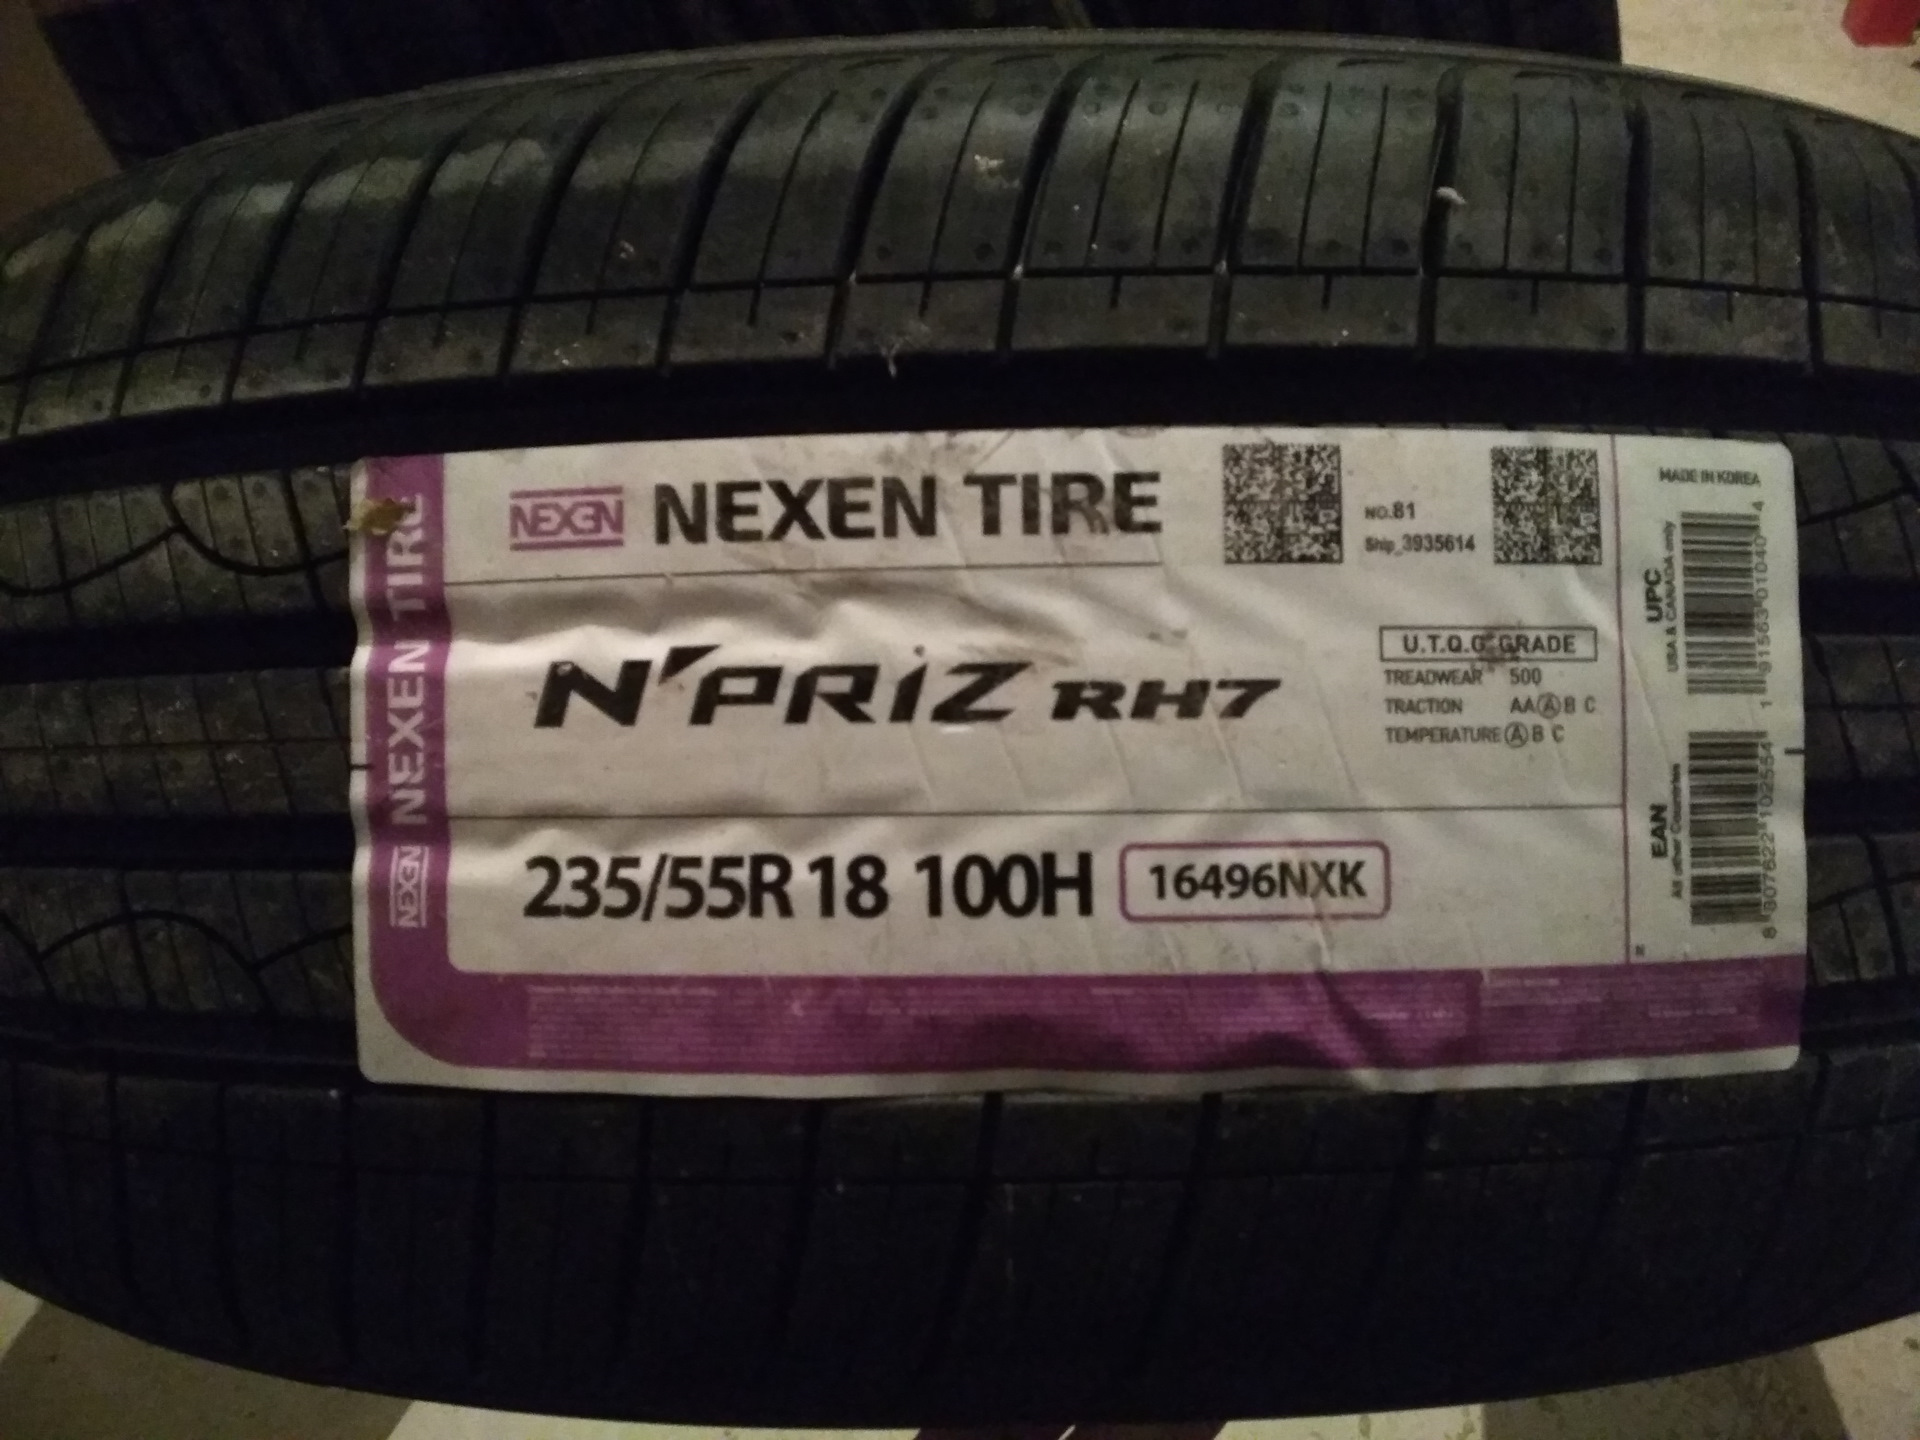 Nexen шины страна производства для россии. 225/55r18 Nexen n'Priz rh7 БК 98 H. Nexen шины Страна производитель. 235/60*18 103h Nexen n Priz rh7 (шт). Nexen n'Priz rh1 215/70r16 100h 14394 шт.